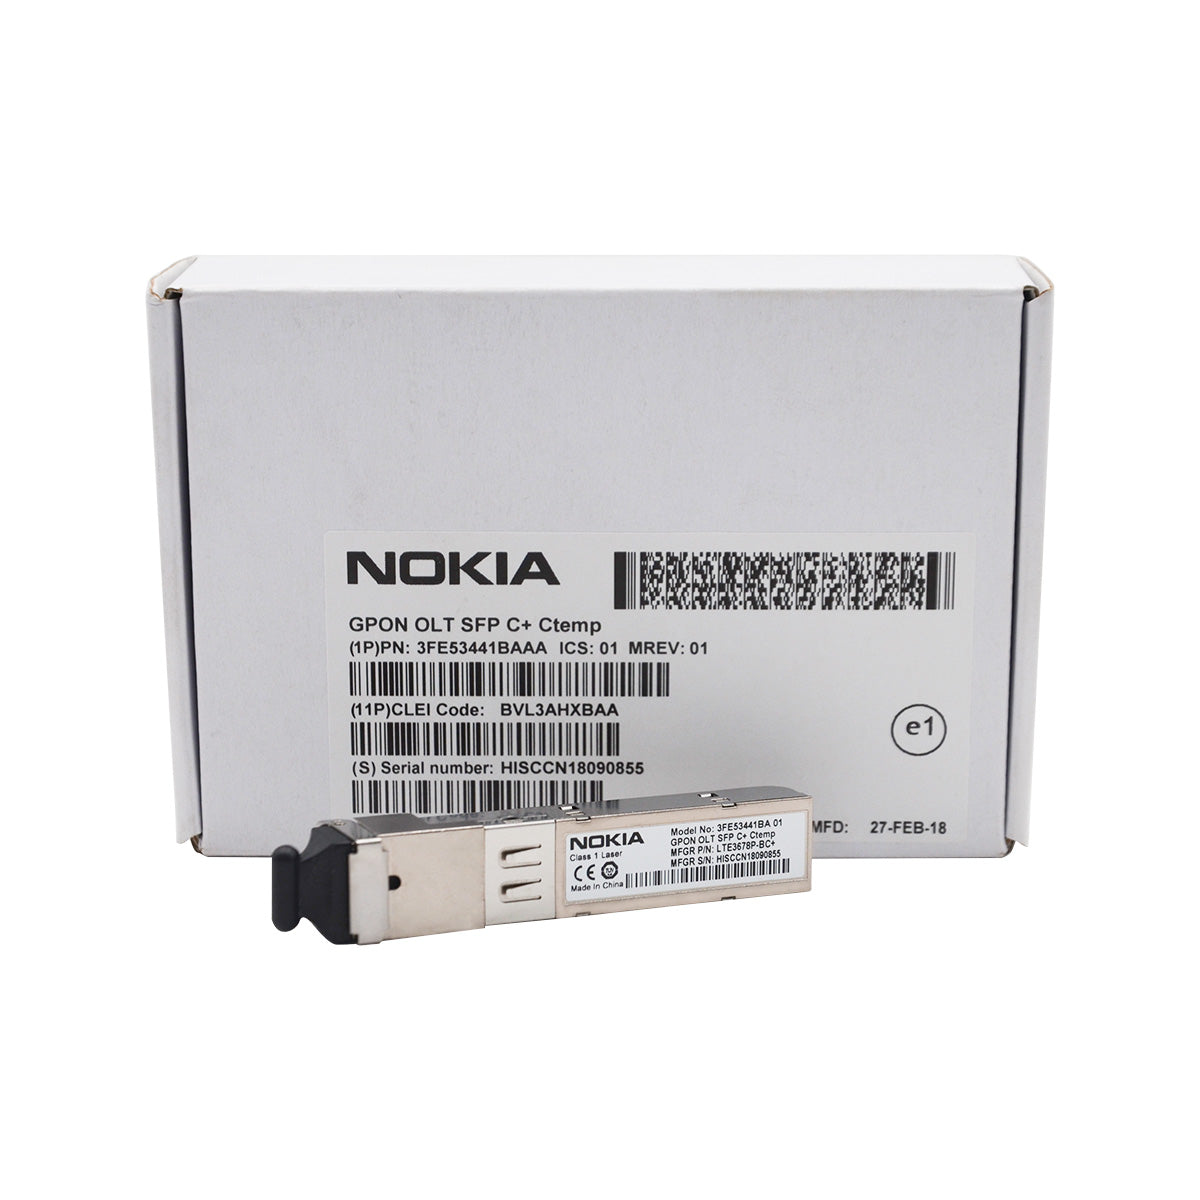 Nokia GPON OLT Class C+ for GPON board FGLT-B, FGLT-A, NGLT-C, 3FE53441BAAA